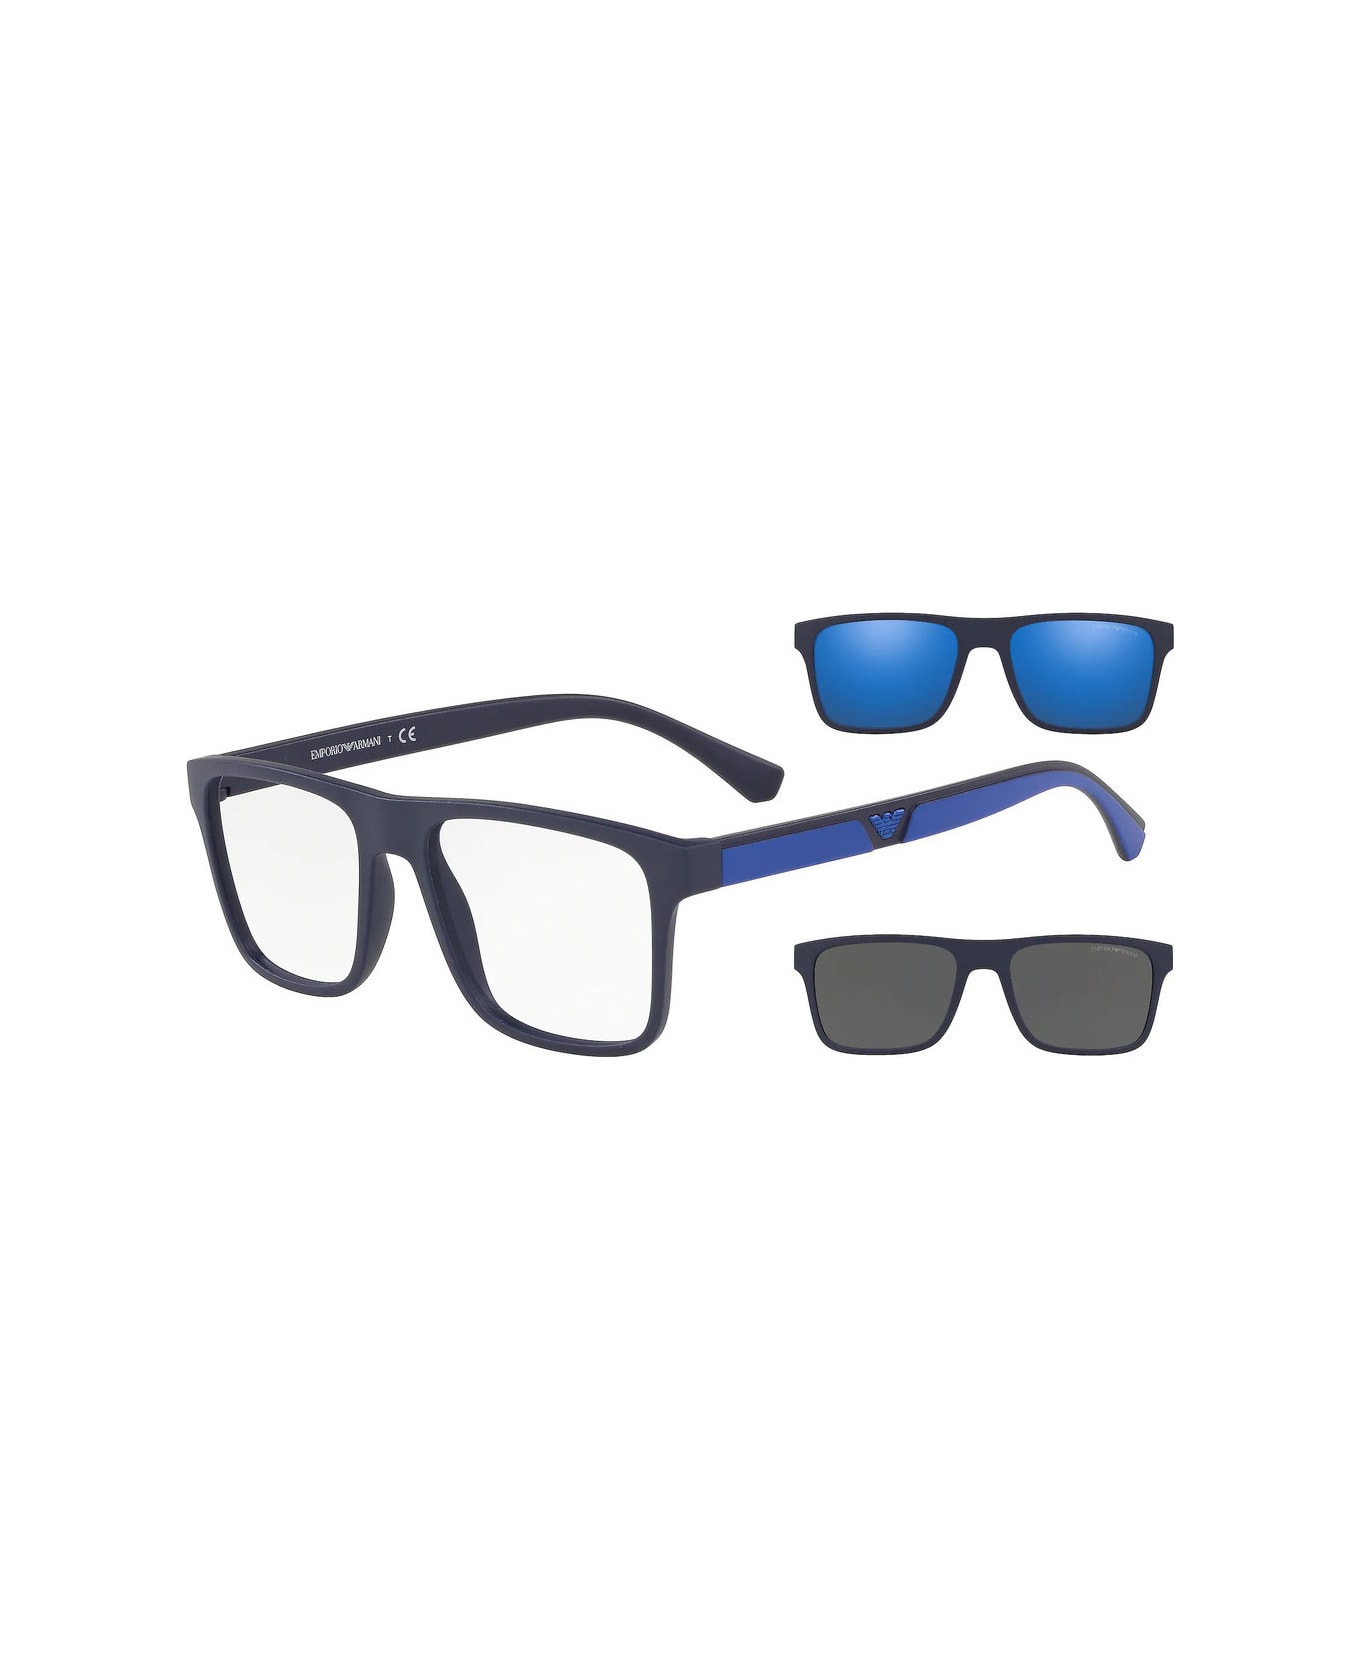 Emporio Armani EA4115 5759/1W Glasses - Blu